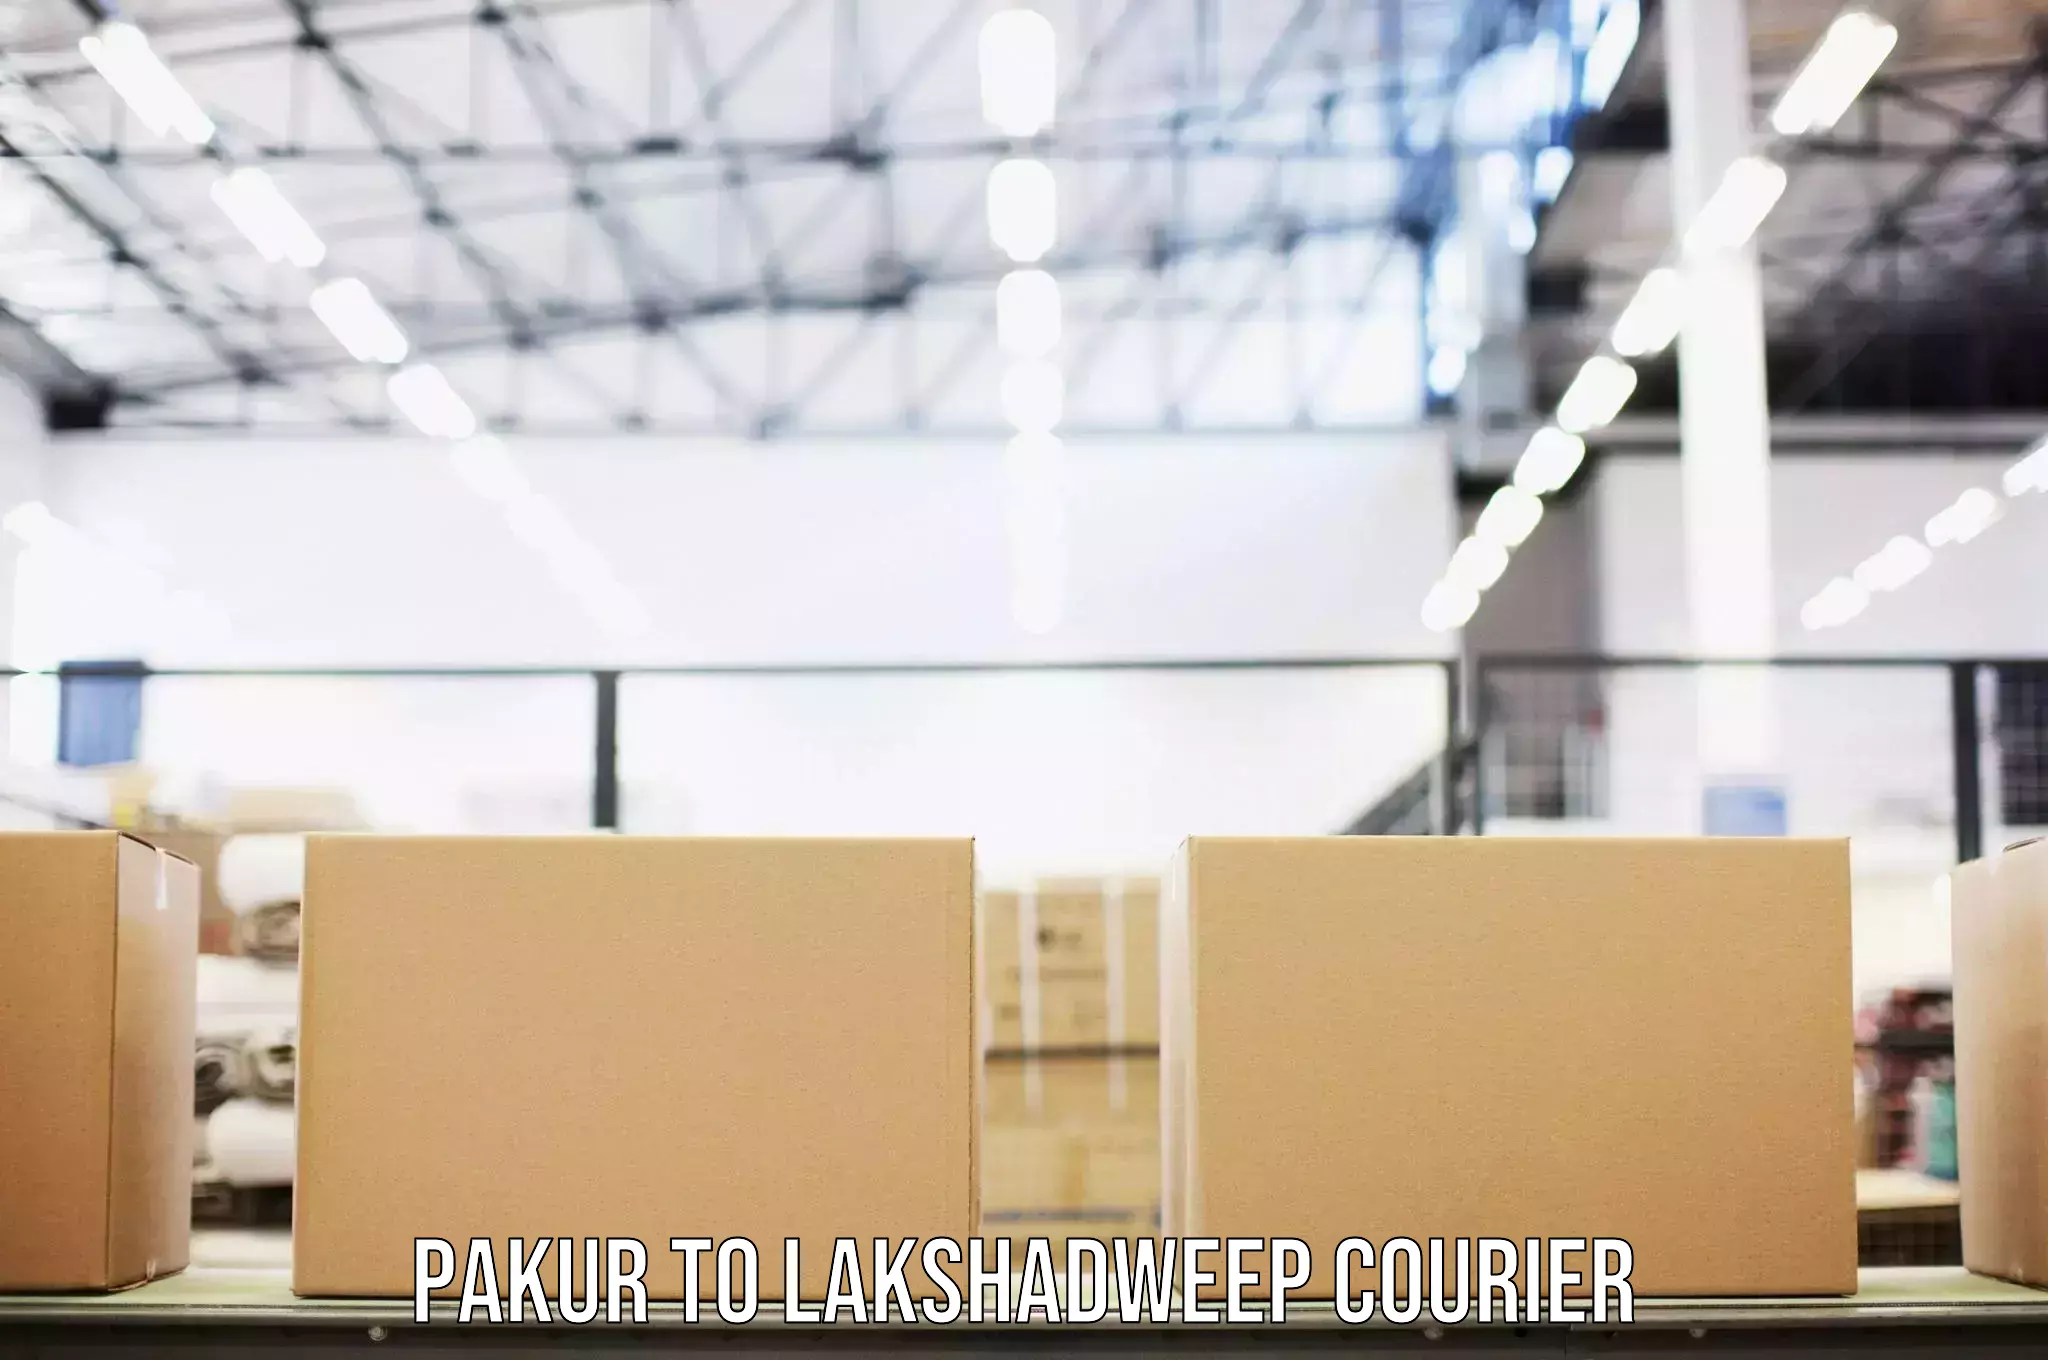 Digital baggage courier Pakur to Lakshadweep